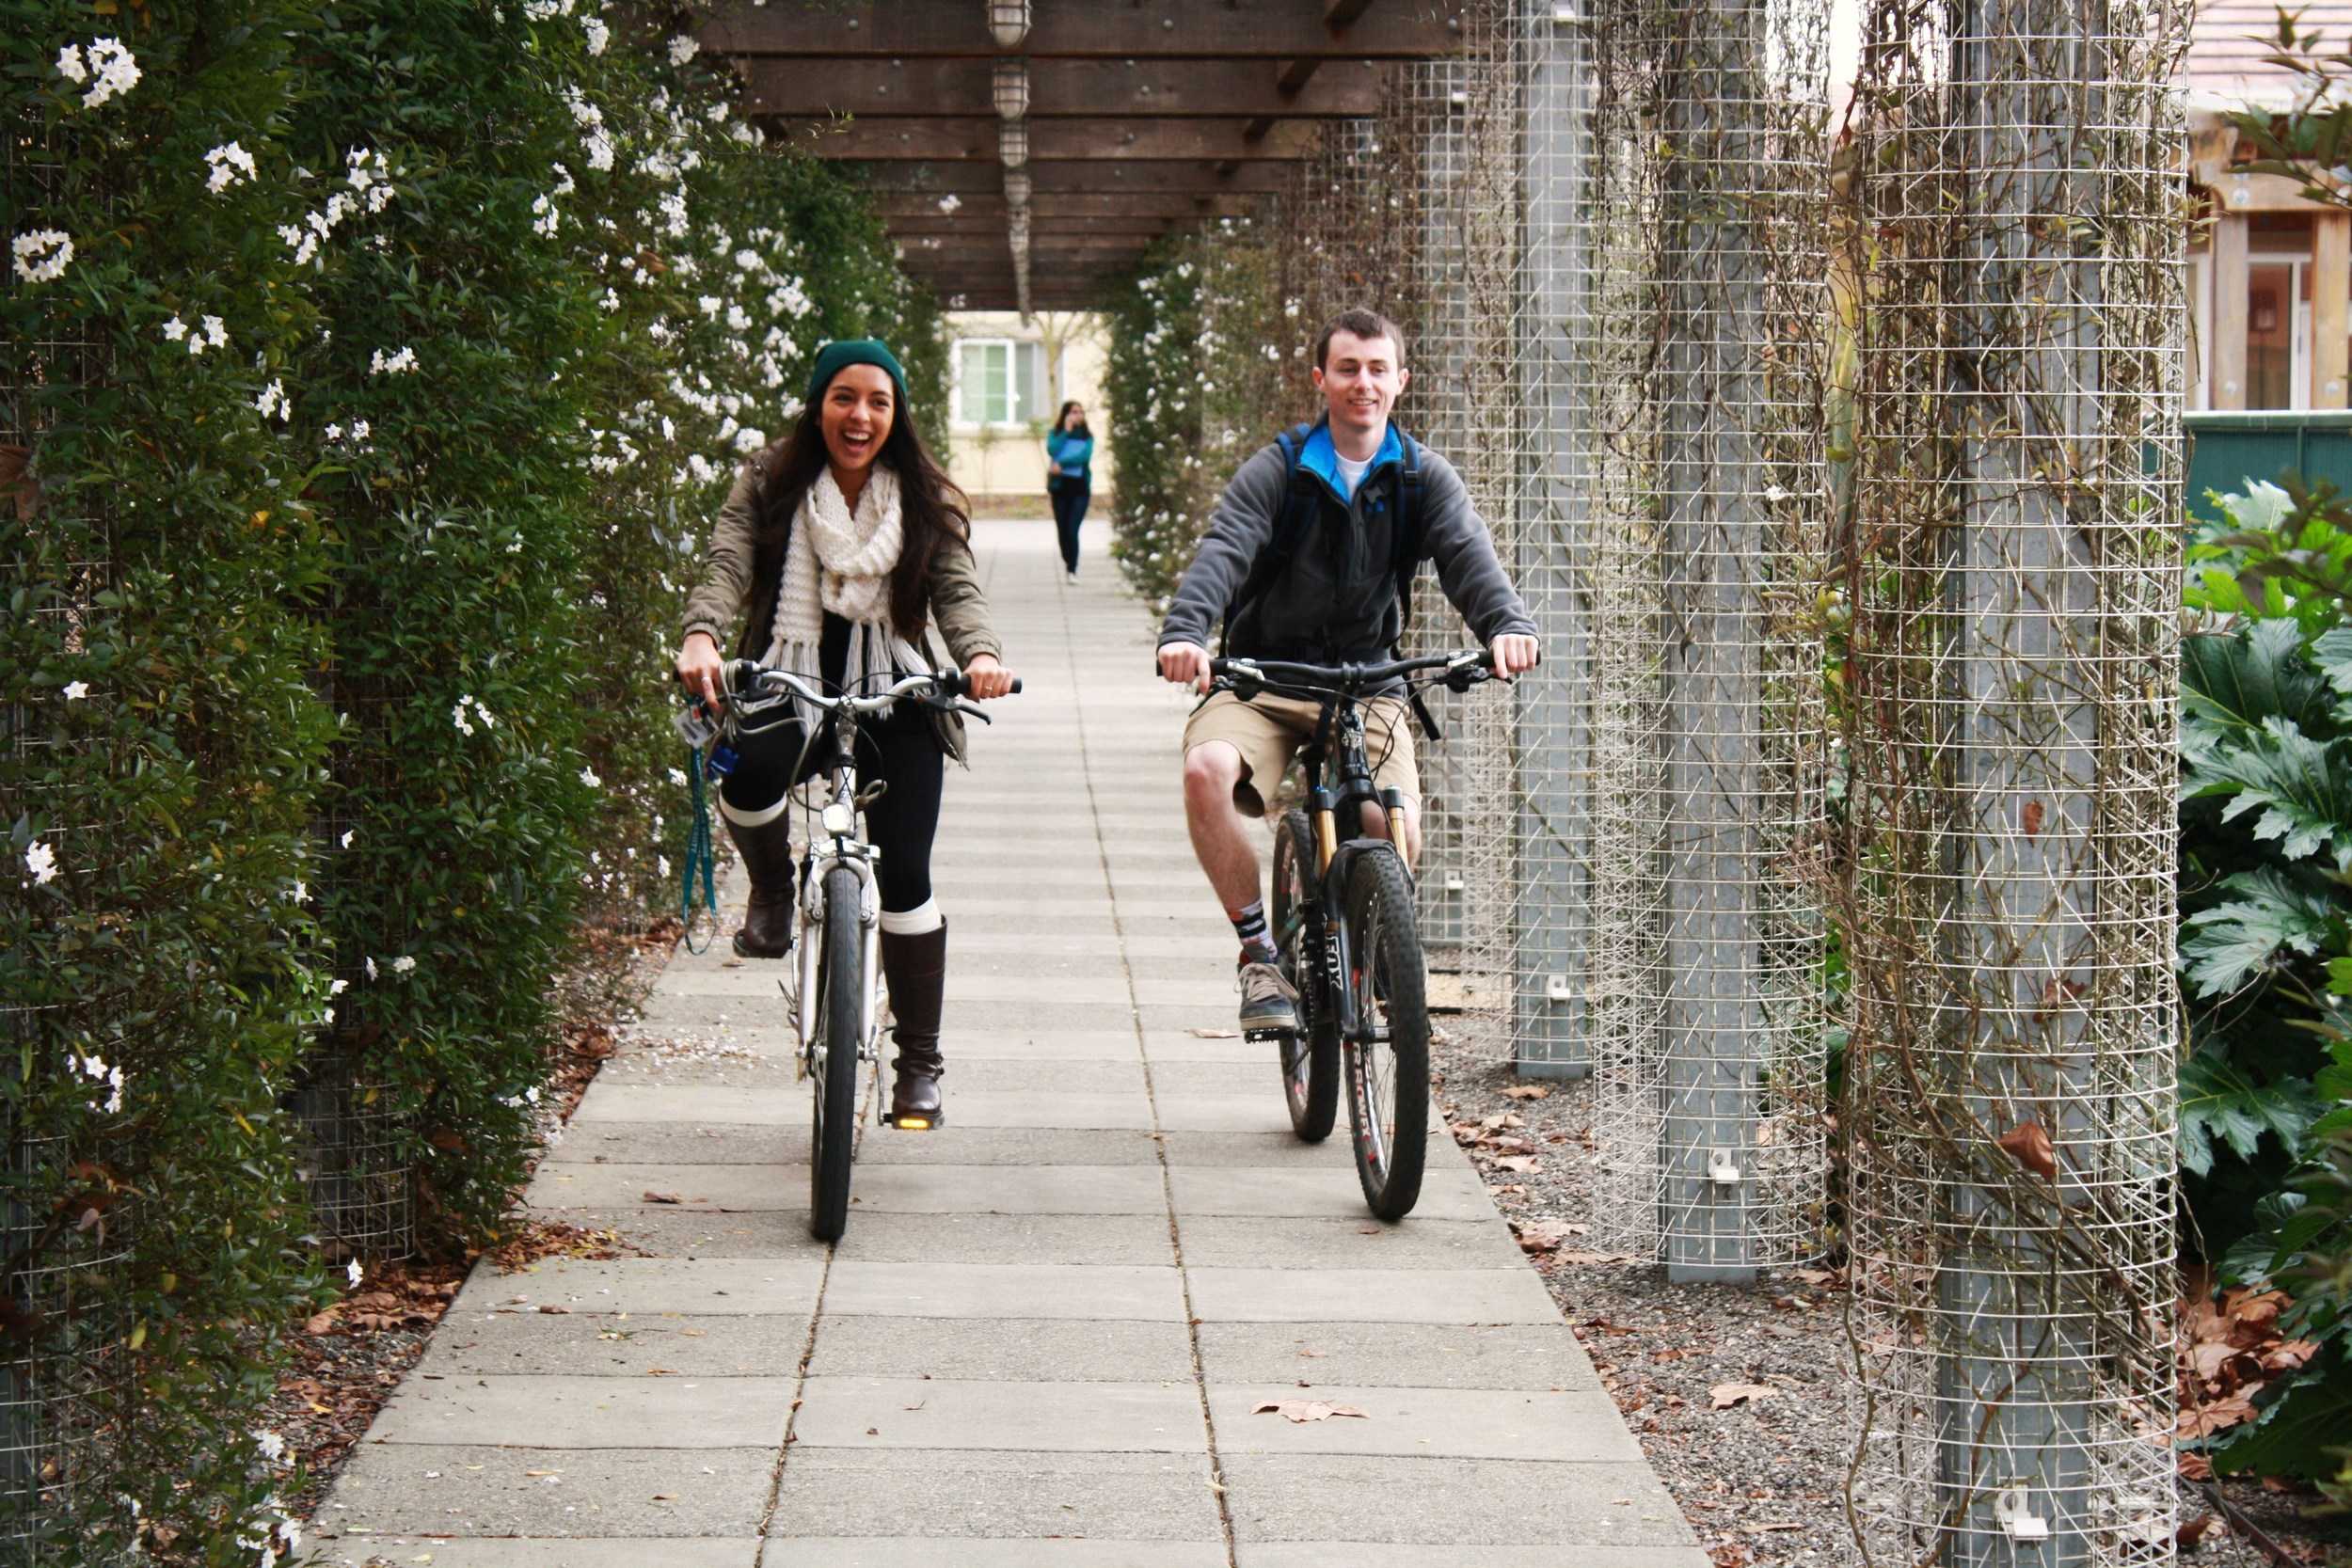 STAR // Niquie WilsonBreanna Pereira, 19, rides her bike home with her friend Josh Krisman, 20 on Thursday.